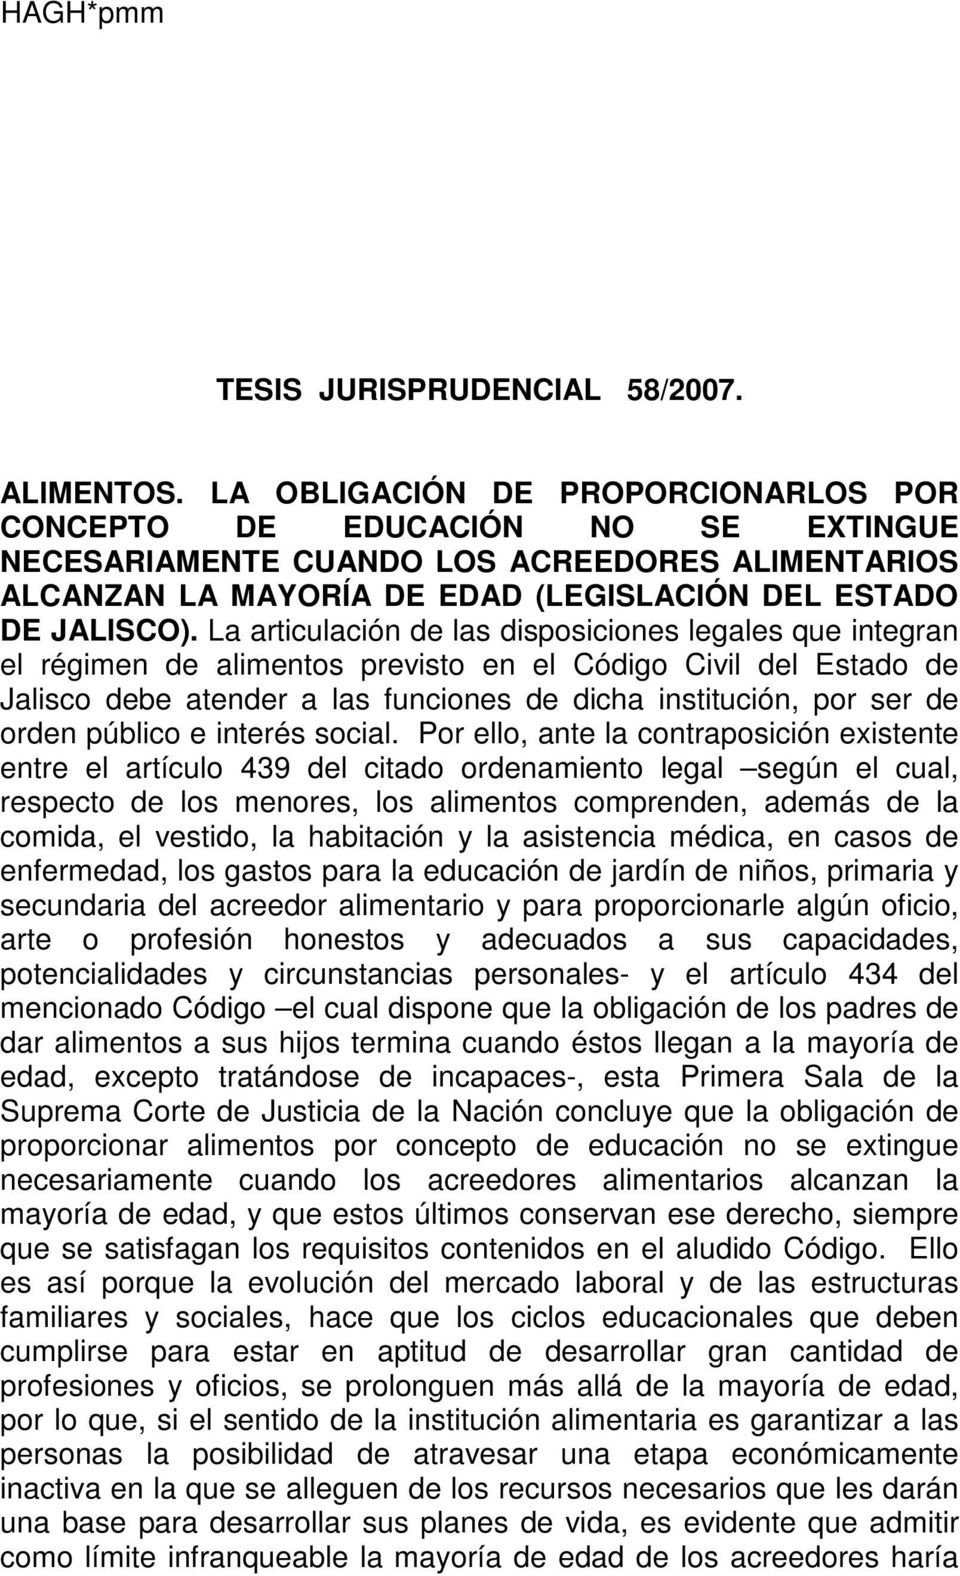 La articulación de las disposiciones legales que integran el régimen de alimentos previsto en el Código Civil del Estado de Jalisco debe atender a las funciones de dicha institución, por ser de orden